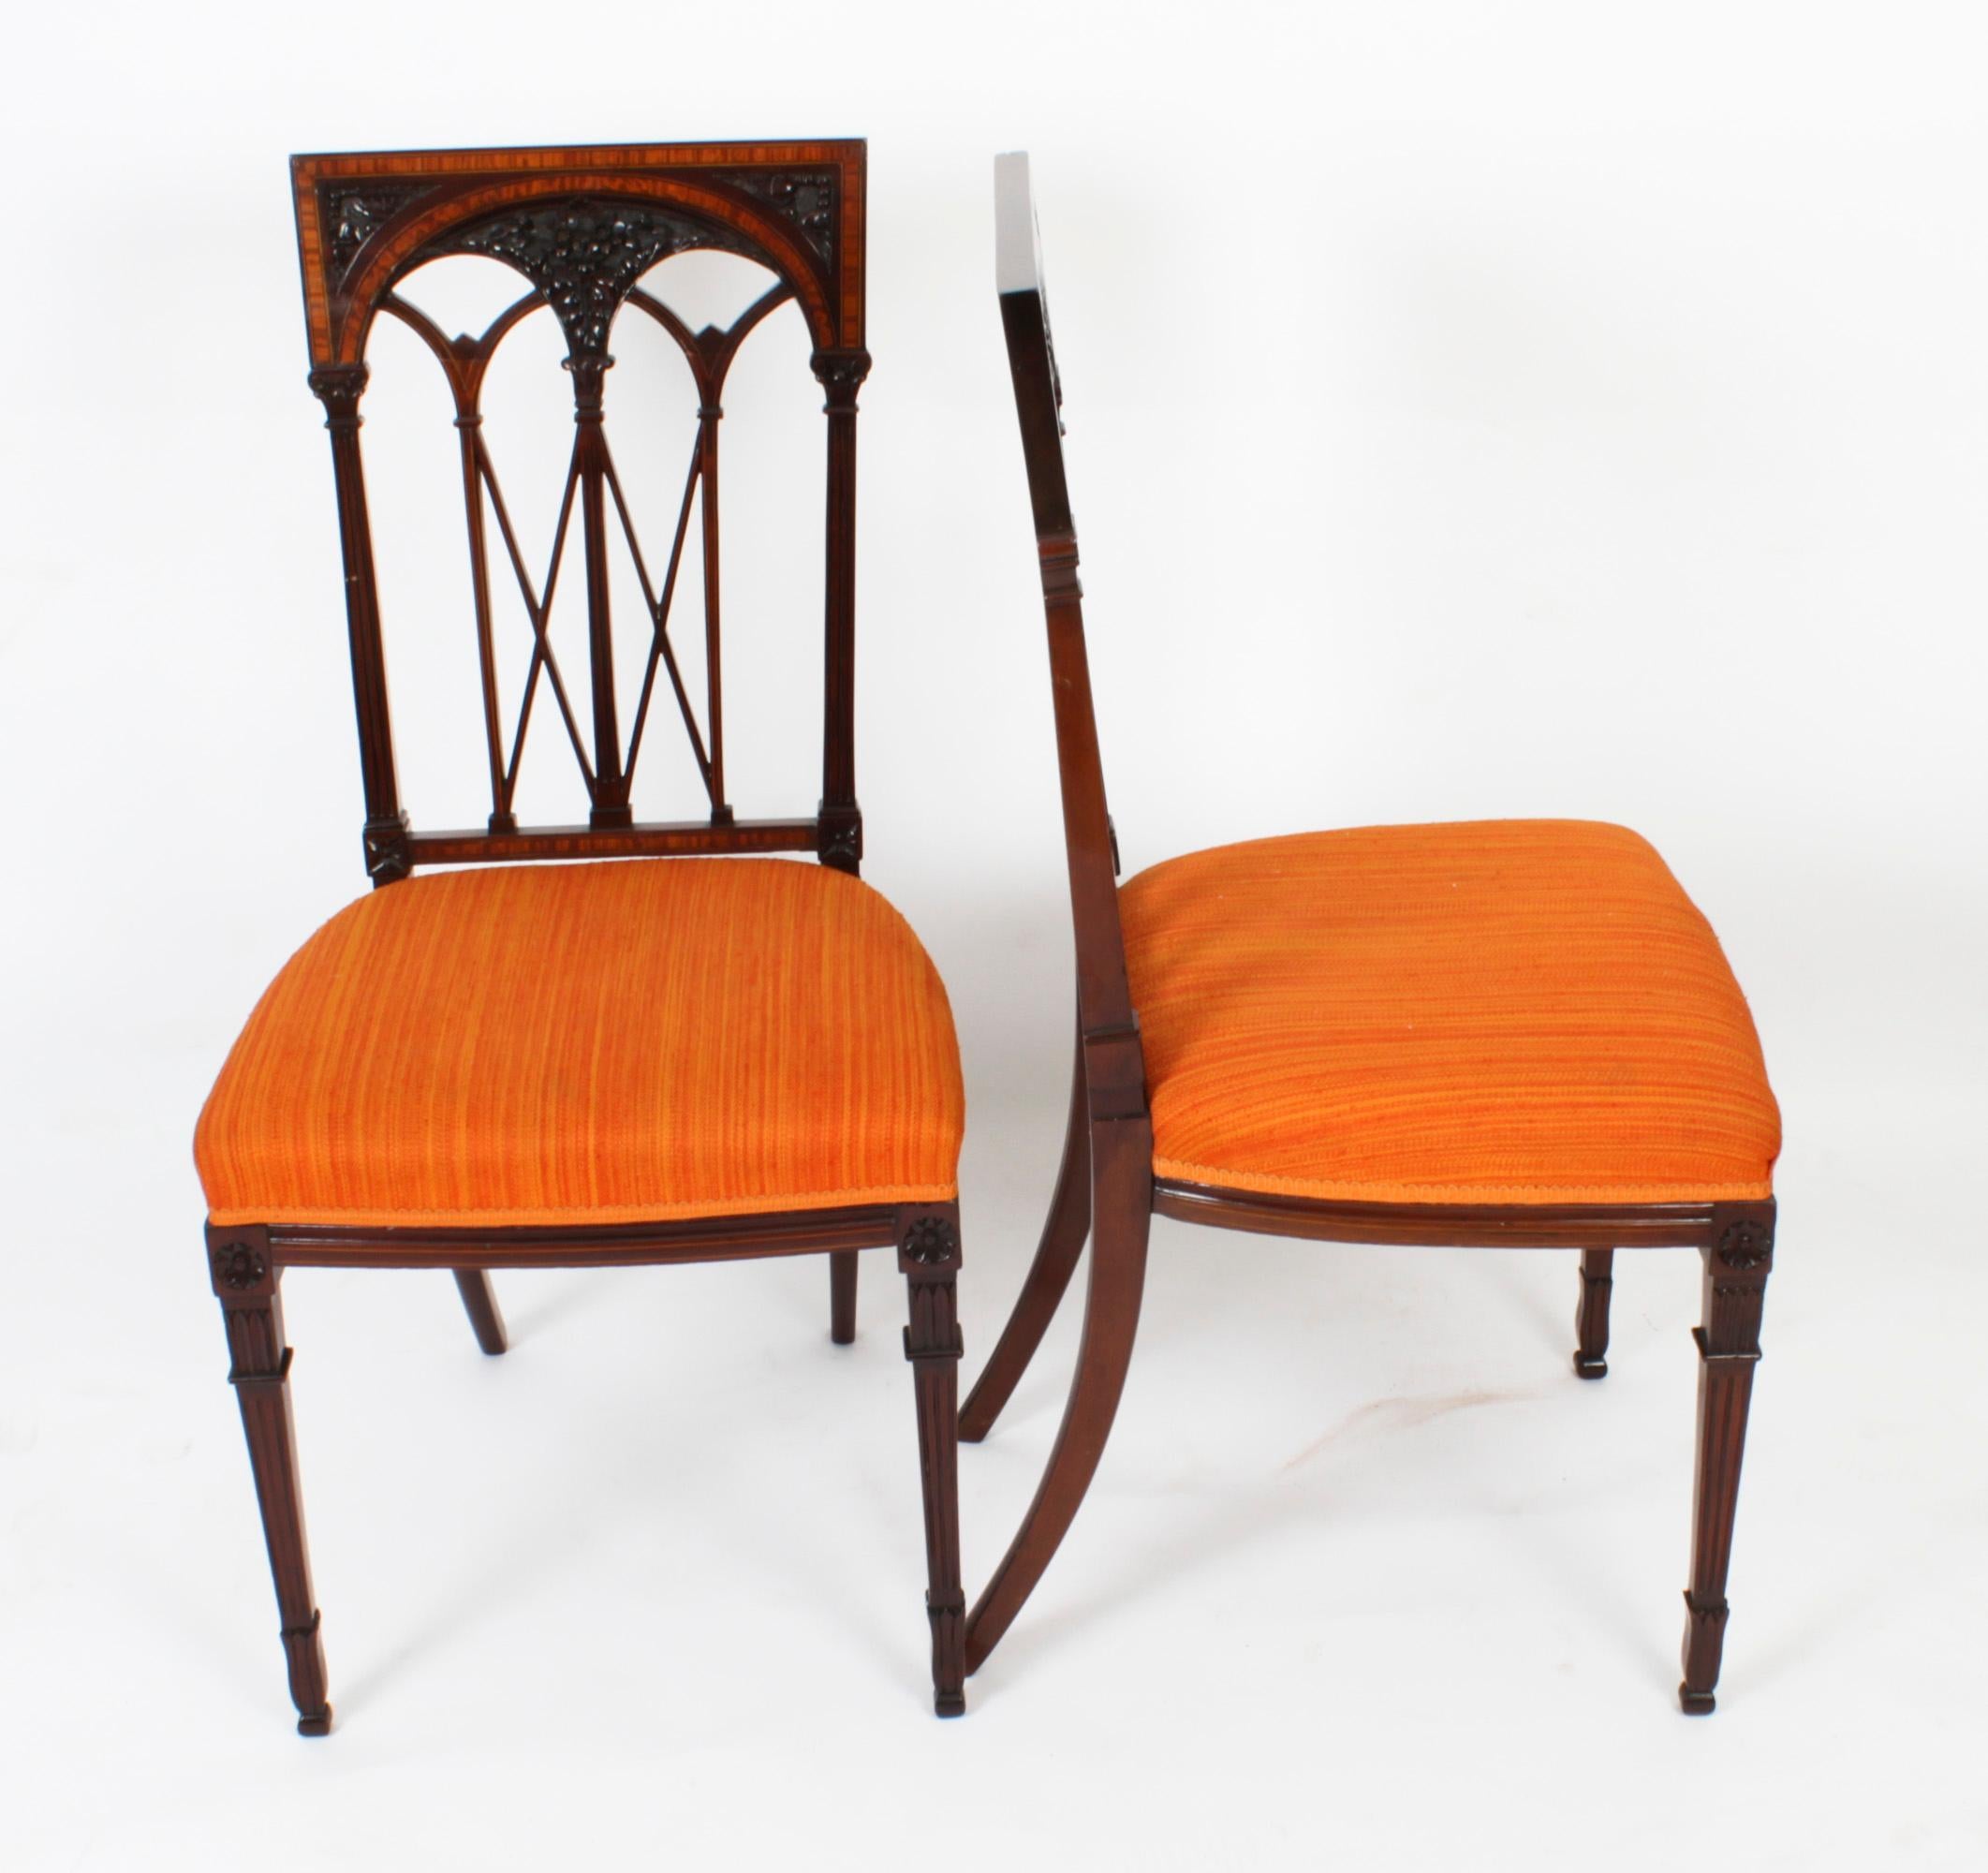 Une superbe et étonnante paire de chaises à bandes en acajou et bois de satin de style néo- Sheraton, datant de 1900.

Les chaises à haut dossier présentent des bandes de bois de satin avec des incrustations de buis et de lignes ébénisées et une